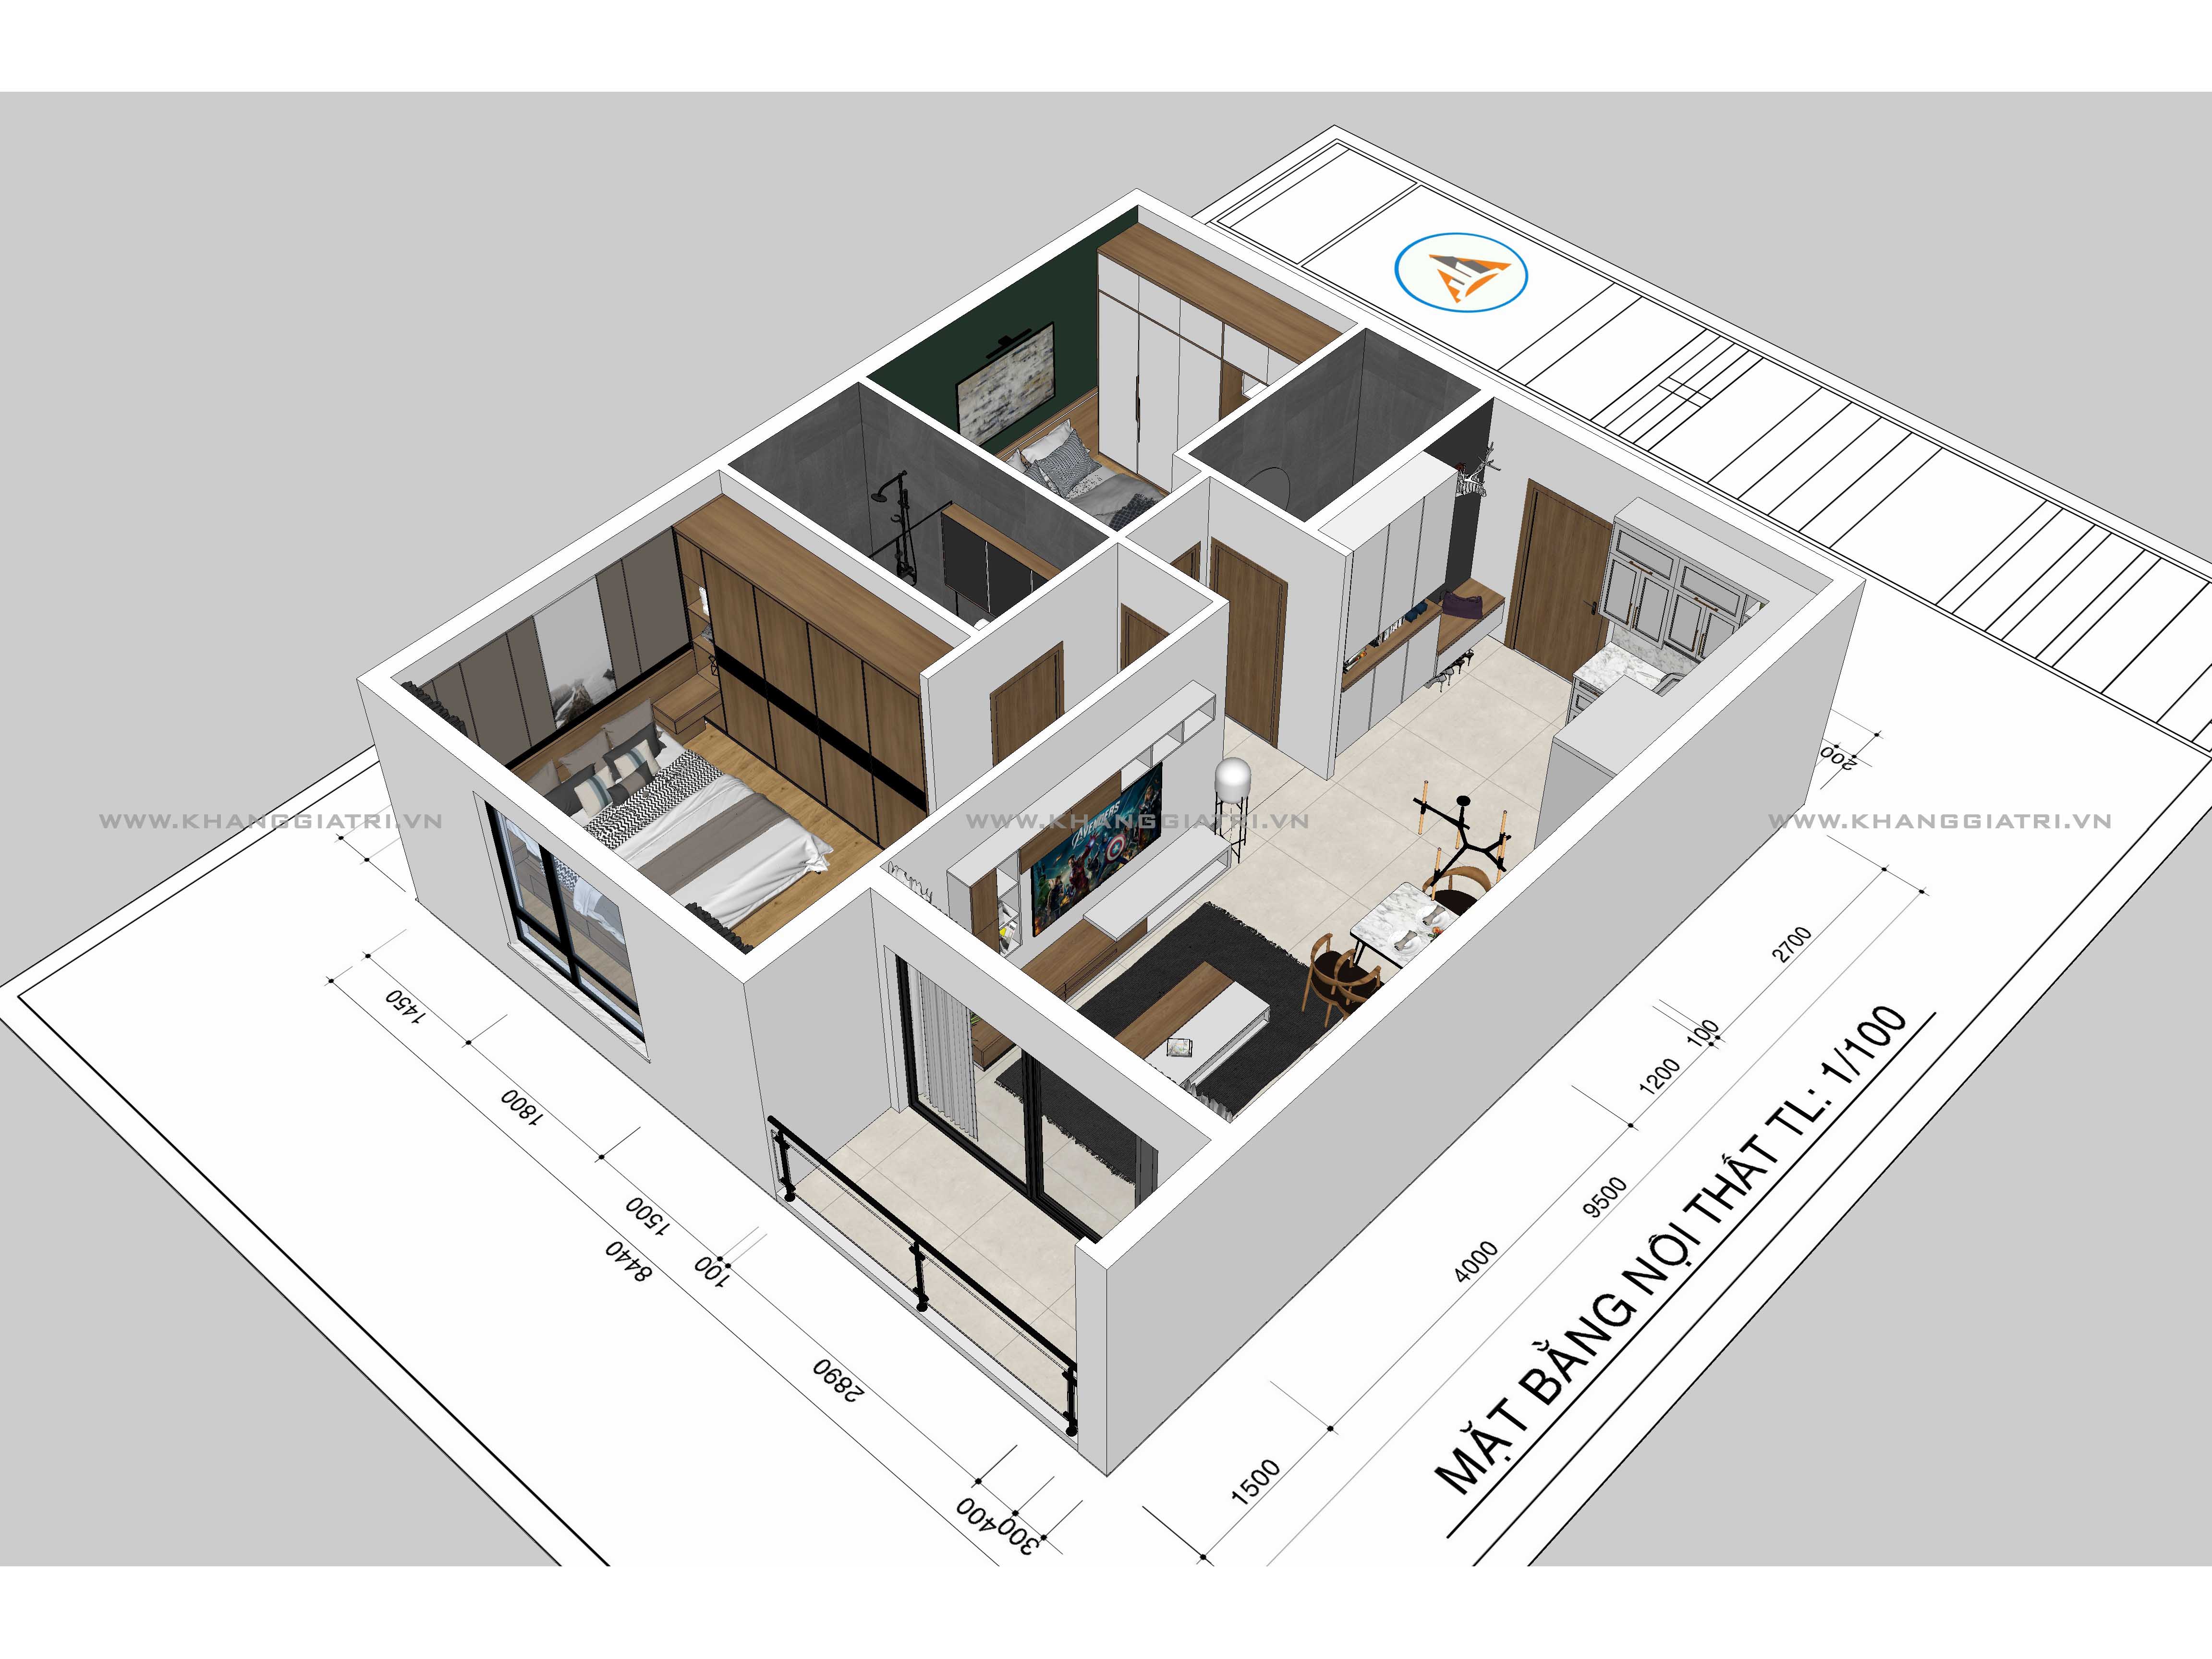 Bạn muốn được trải nghiệm cảm giác sống trong một ngôi nhà 3D độc đáo? Hãy thử vẽ ngôi nhà của mình bằng Sketchup và trải nghiệm sự thật như đang sống trong ngôi nhà mơ ước của mình.